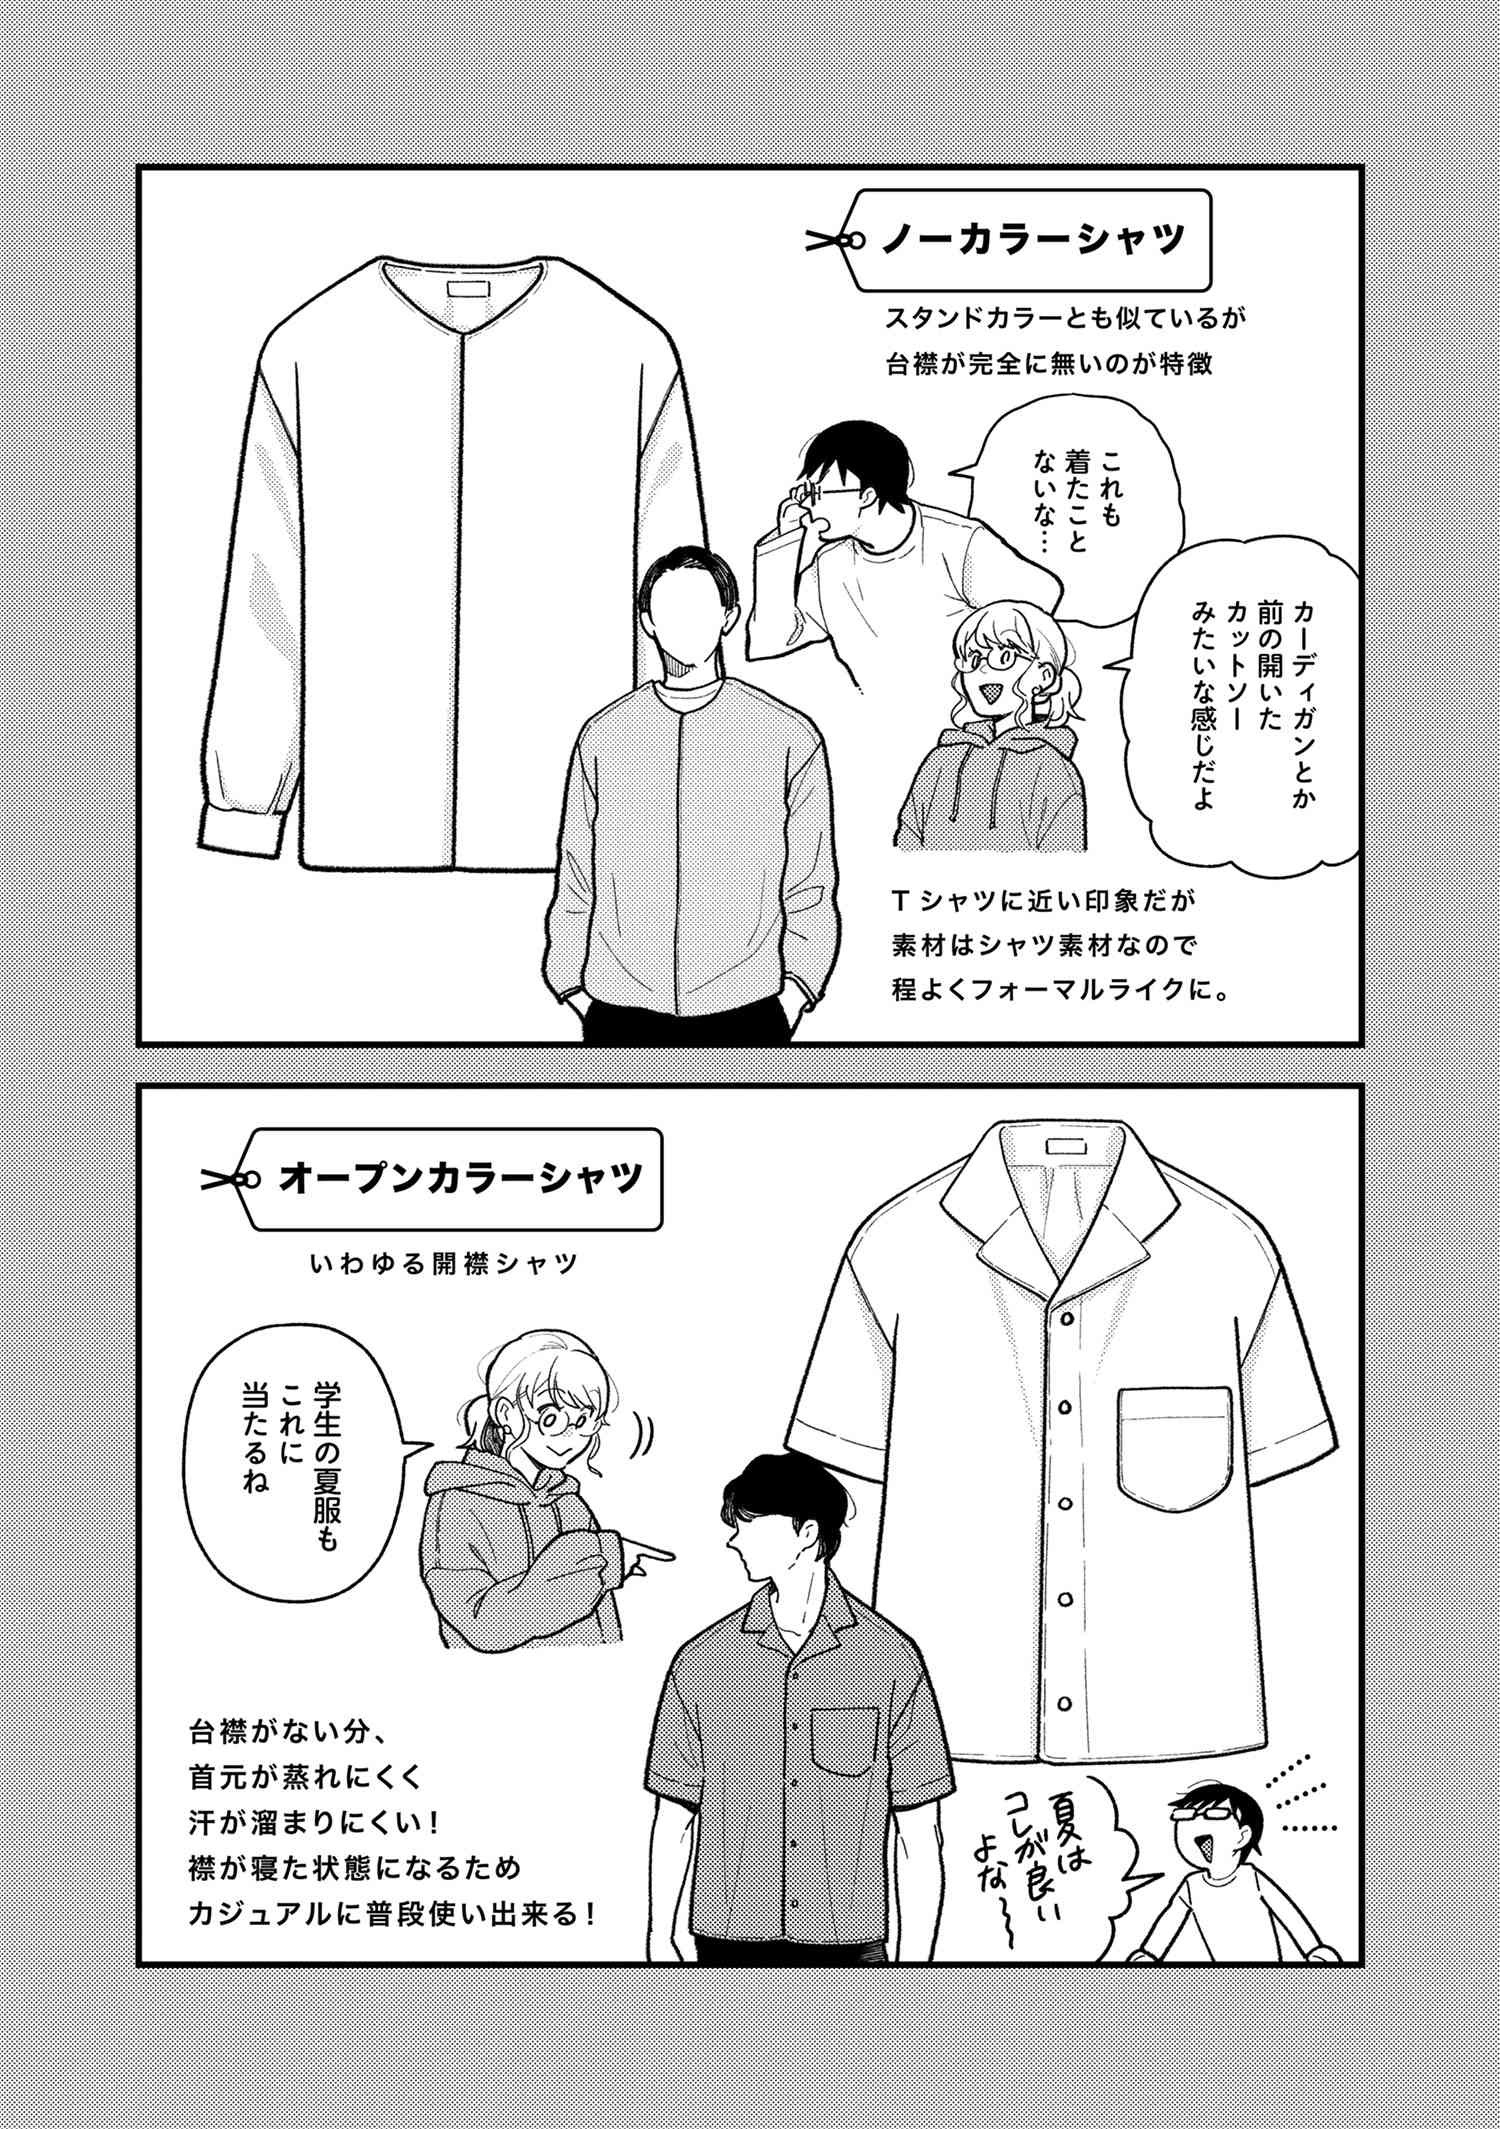 Fuku o Kiru Nara Konna Fuu ni - 服を着るならこんなふうに - Chapter 90 - Page 2